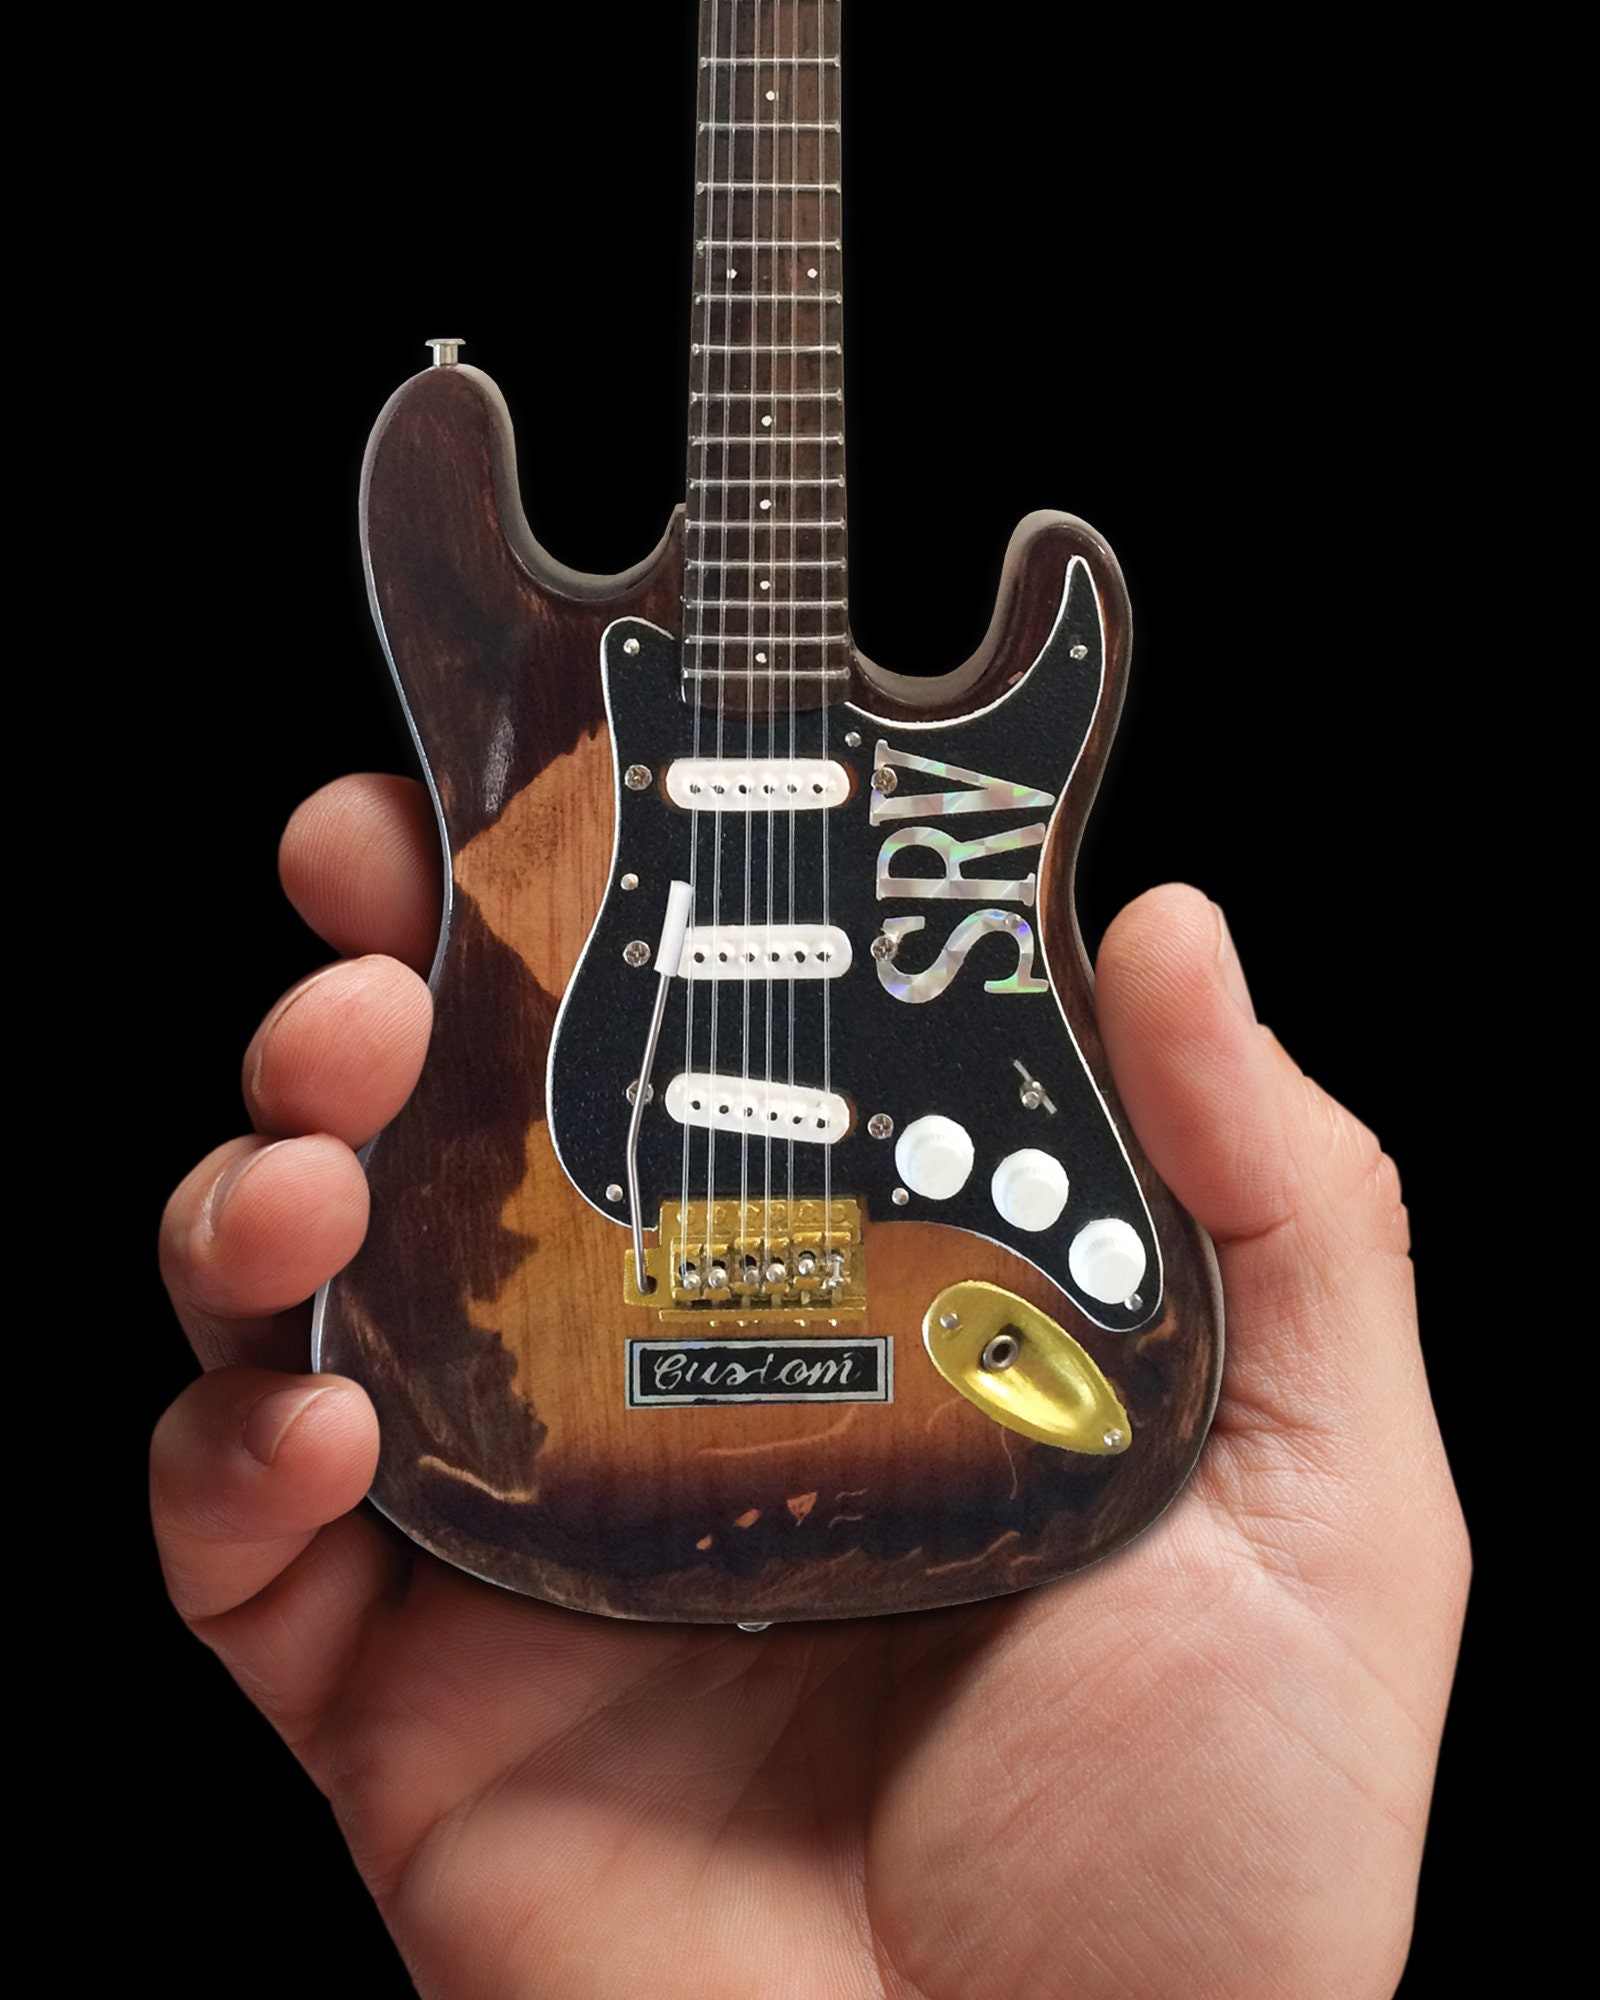 STEVIE RAY VAUGHAN SRV GUITAR NECK PLATE Custom Engraved Fit Fender CHROME 